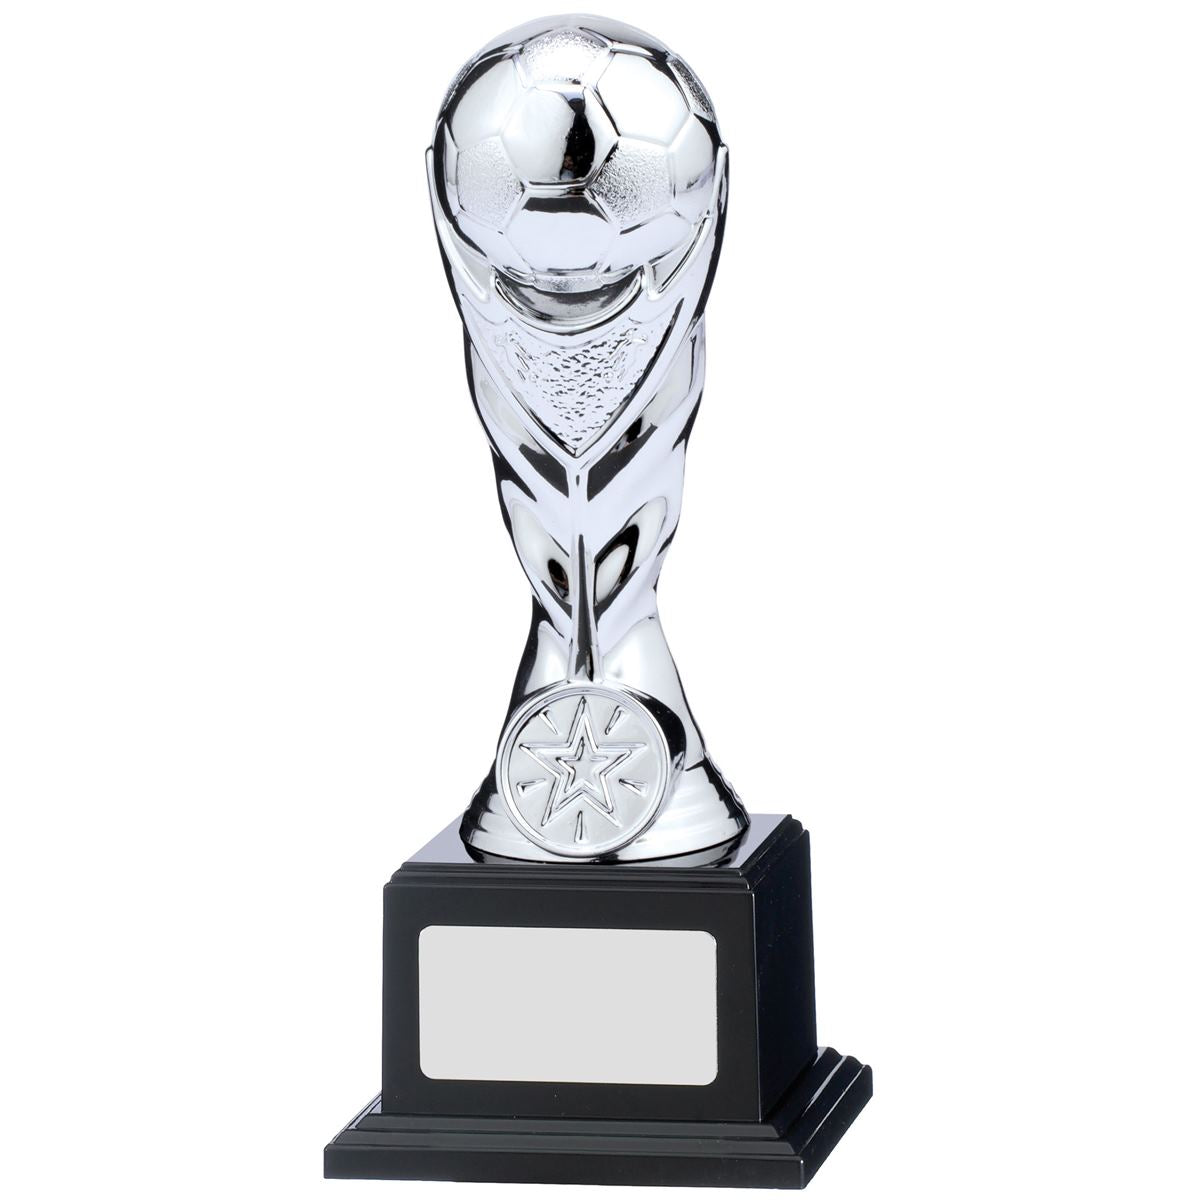 Shiny Silver Football Trophy Award